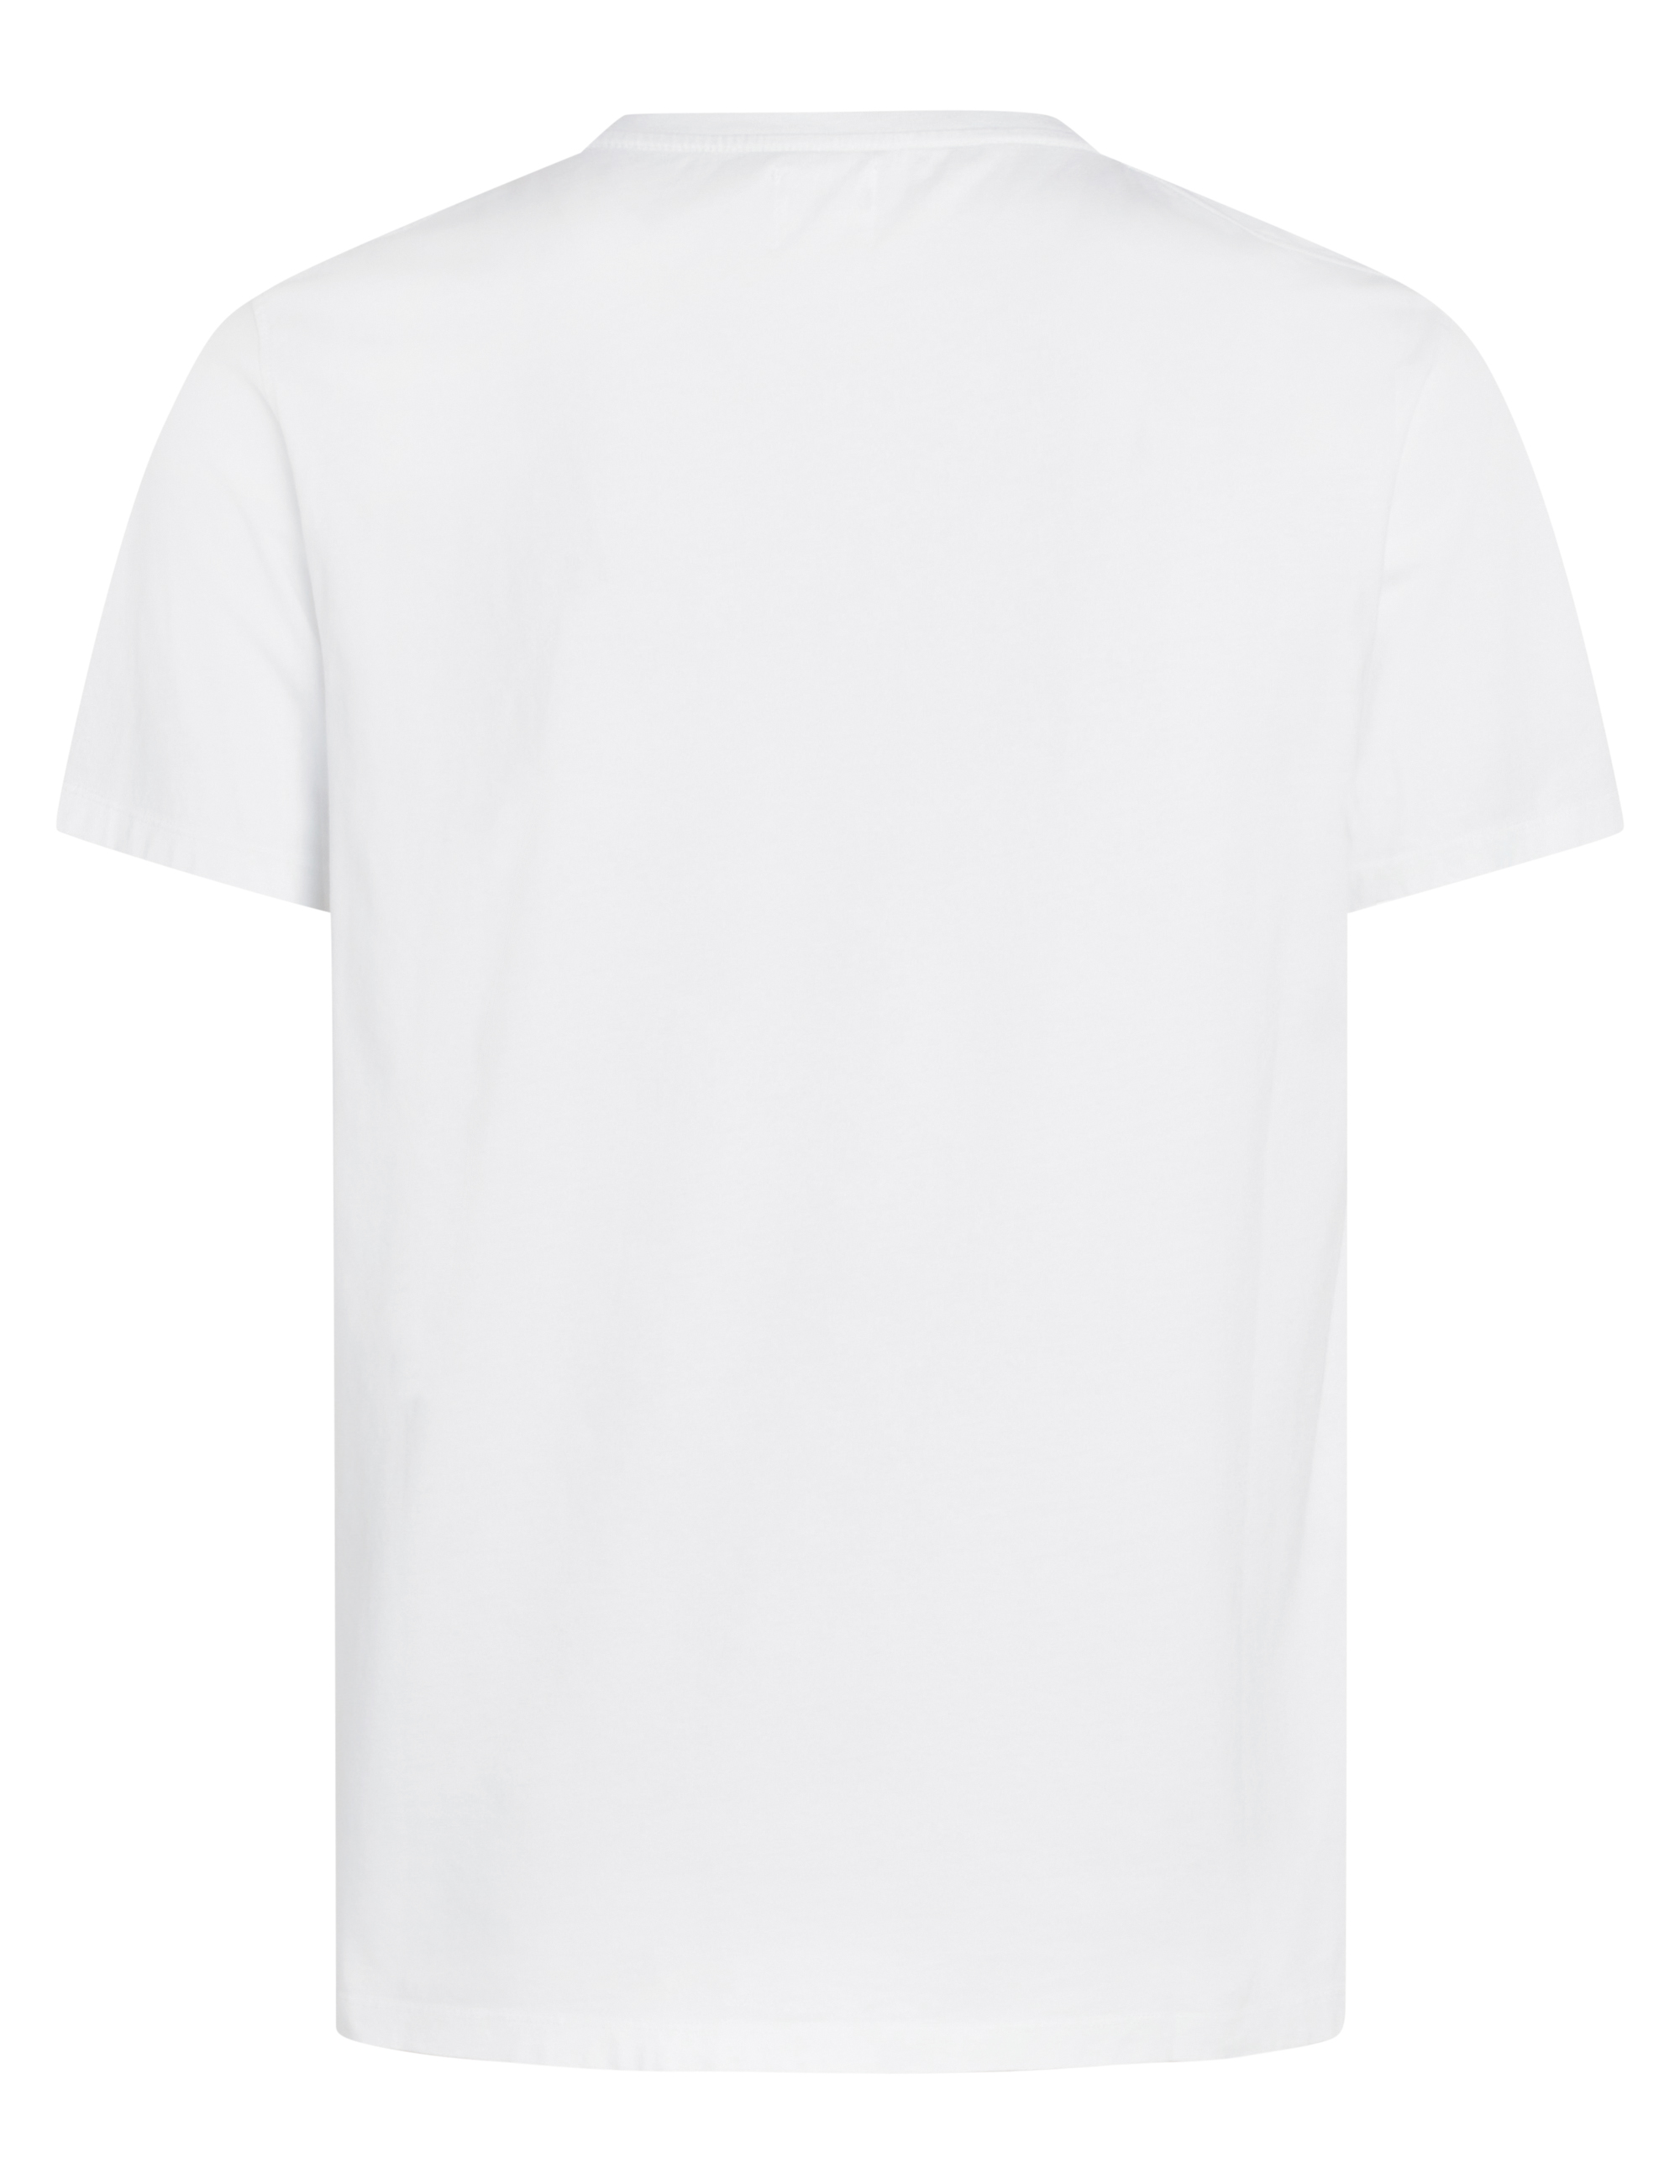 Bedrucktes T-Shirt Pelle tee White/navy/ocean